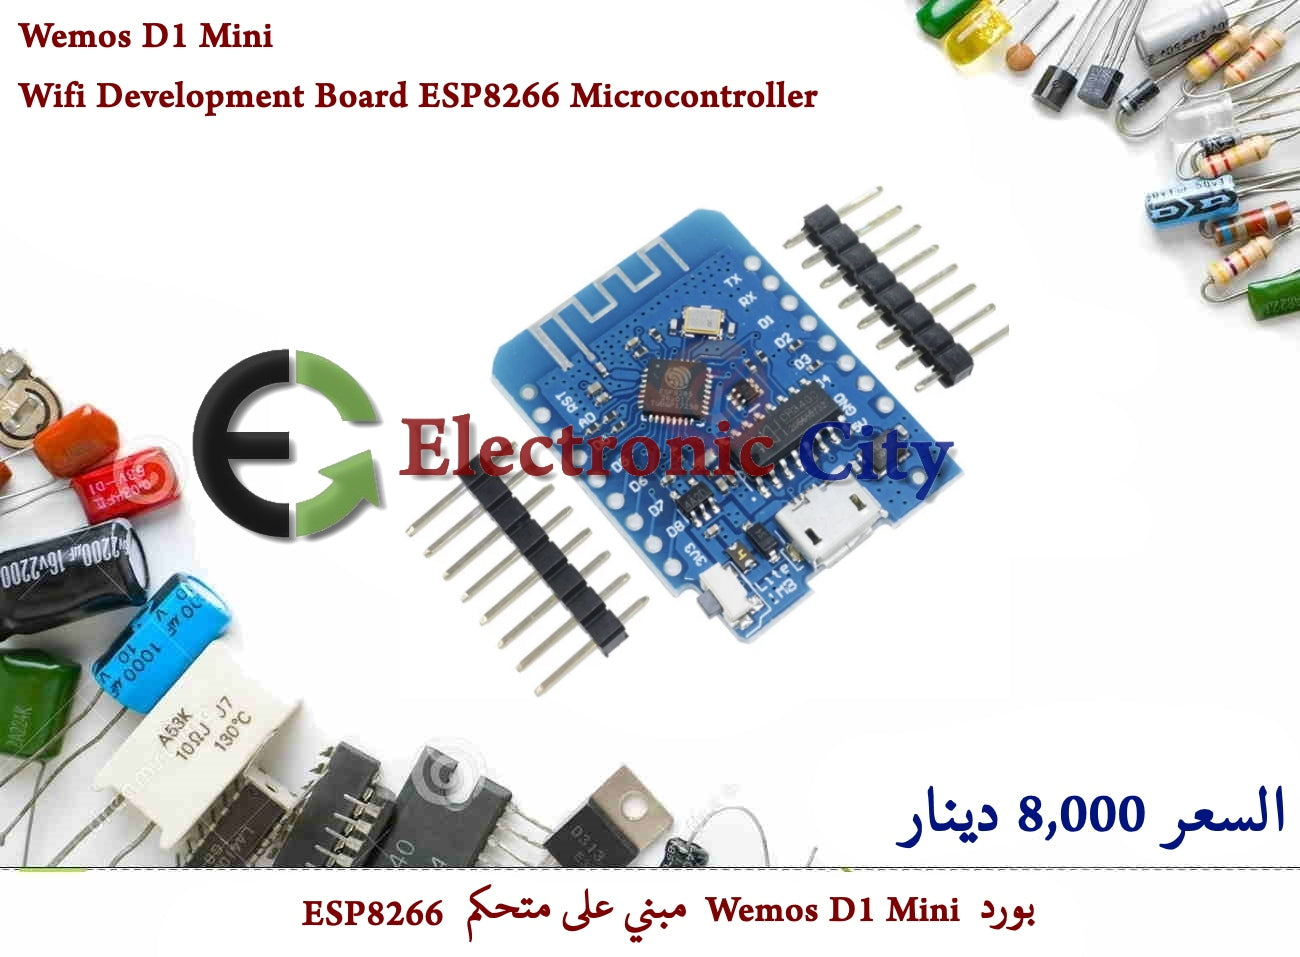 Wemos D1 Mini Wifi Development Board ESP8266 Microcontroller